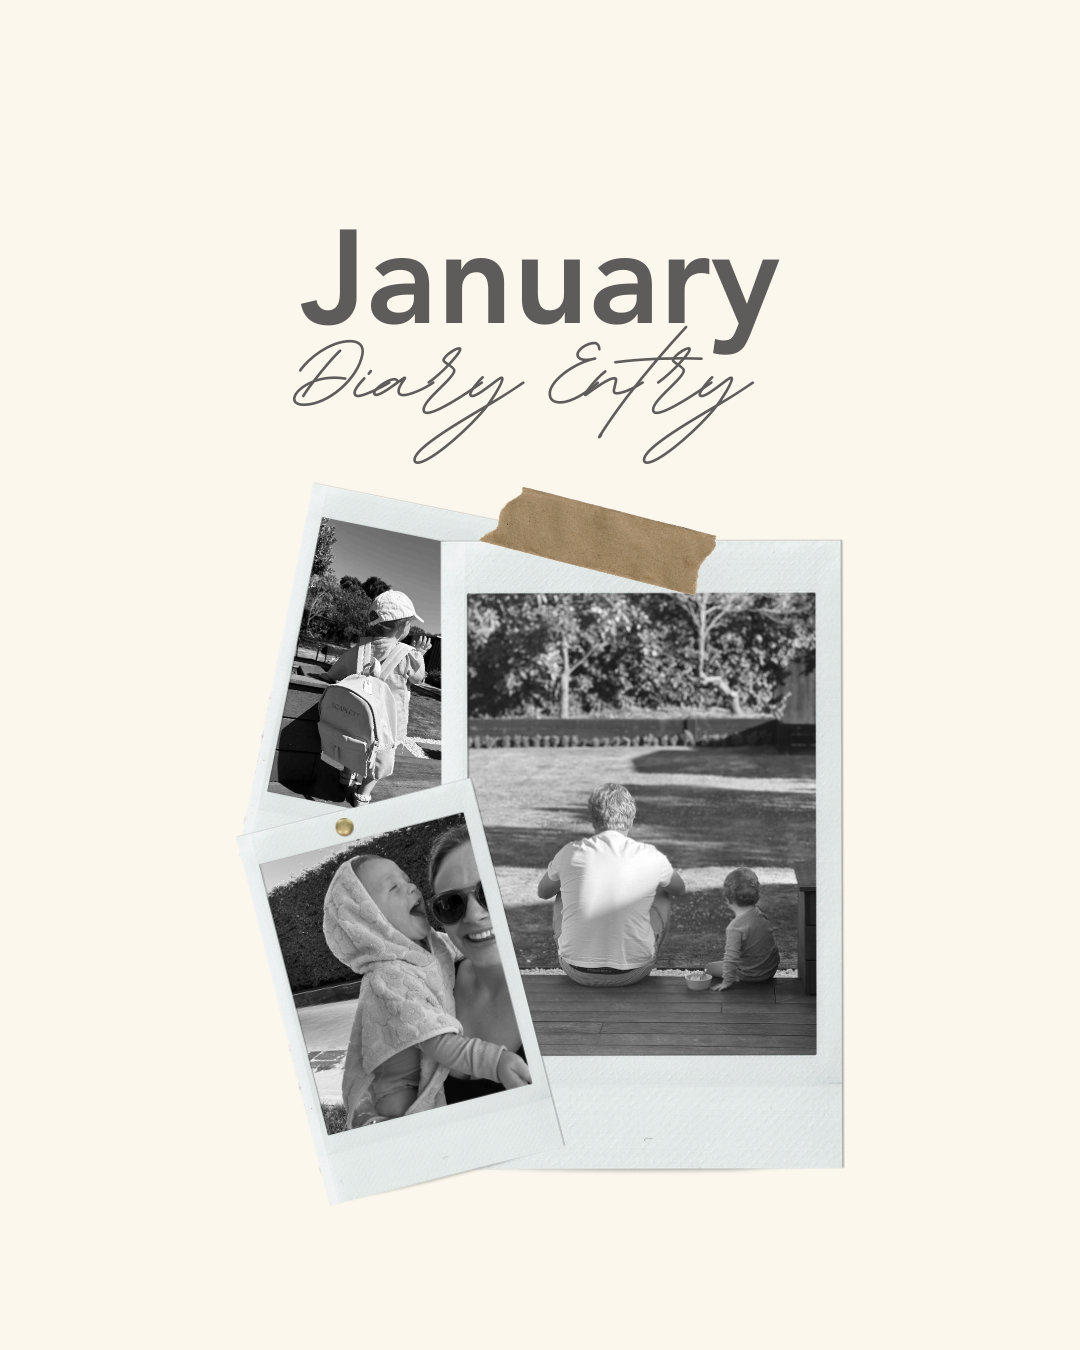 Grace's January Diary Entry